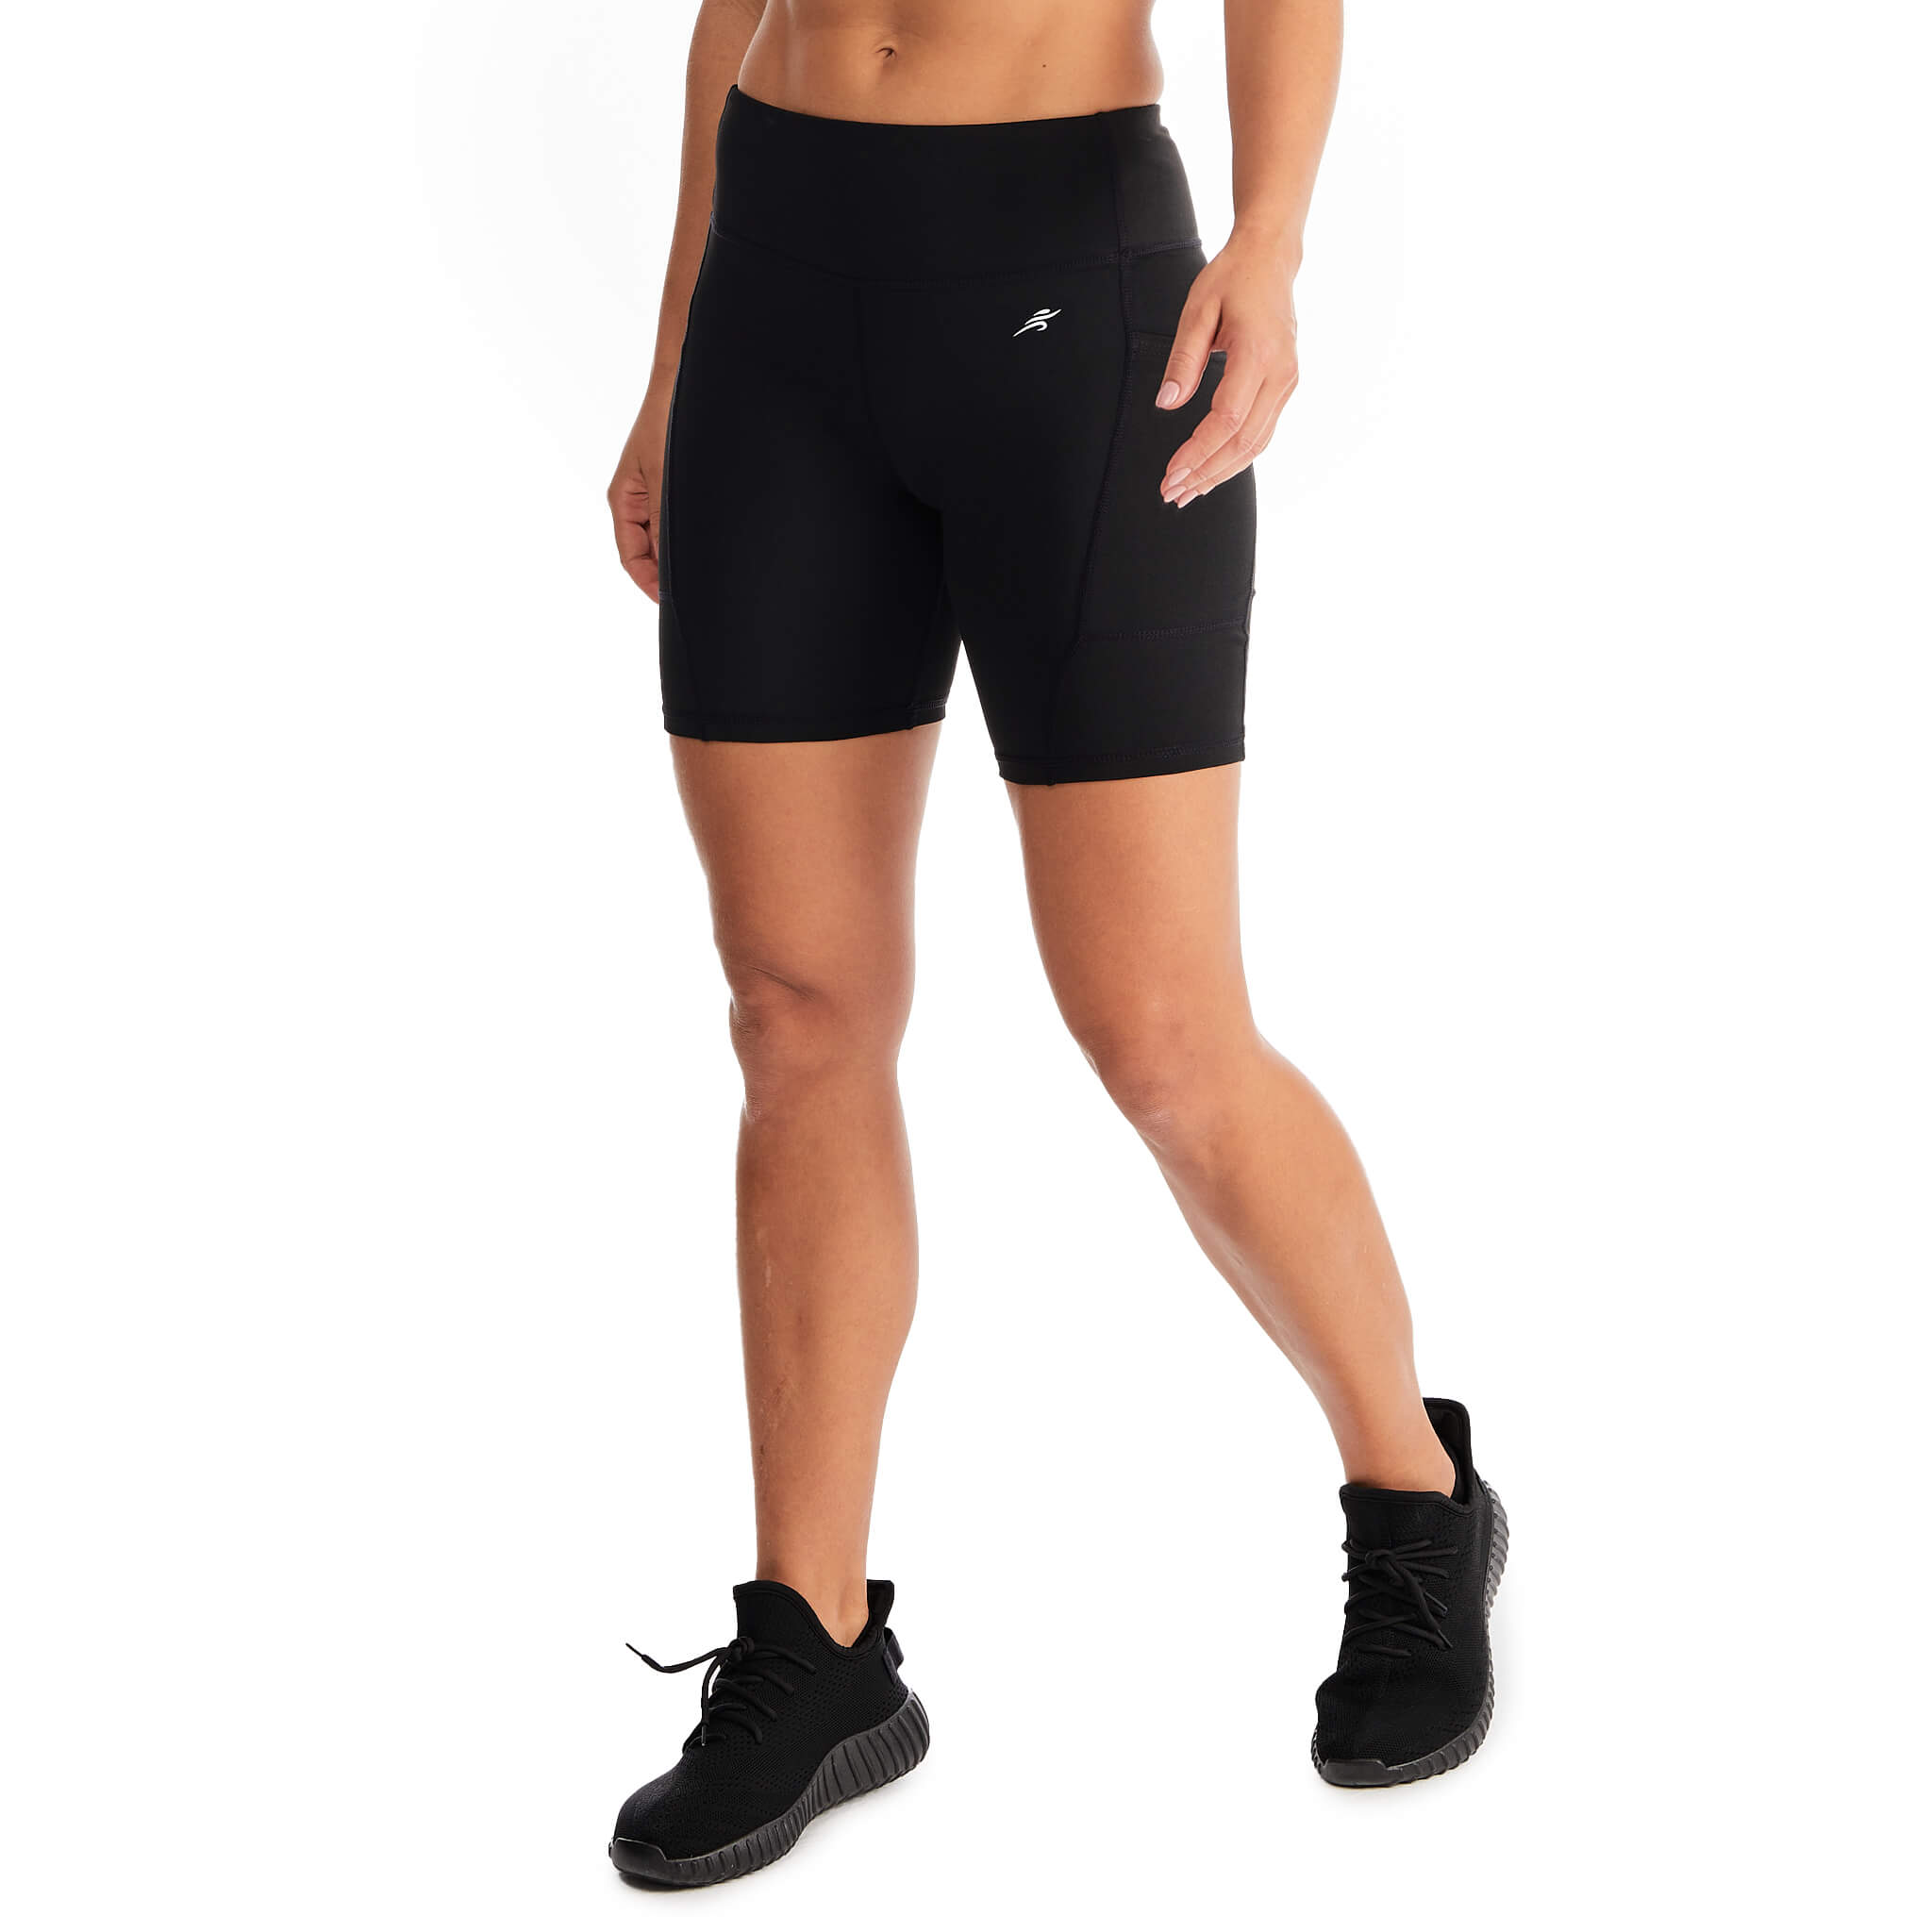 AL Biker Shorts - Black - Active Loom